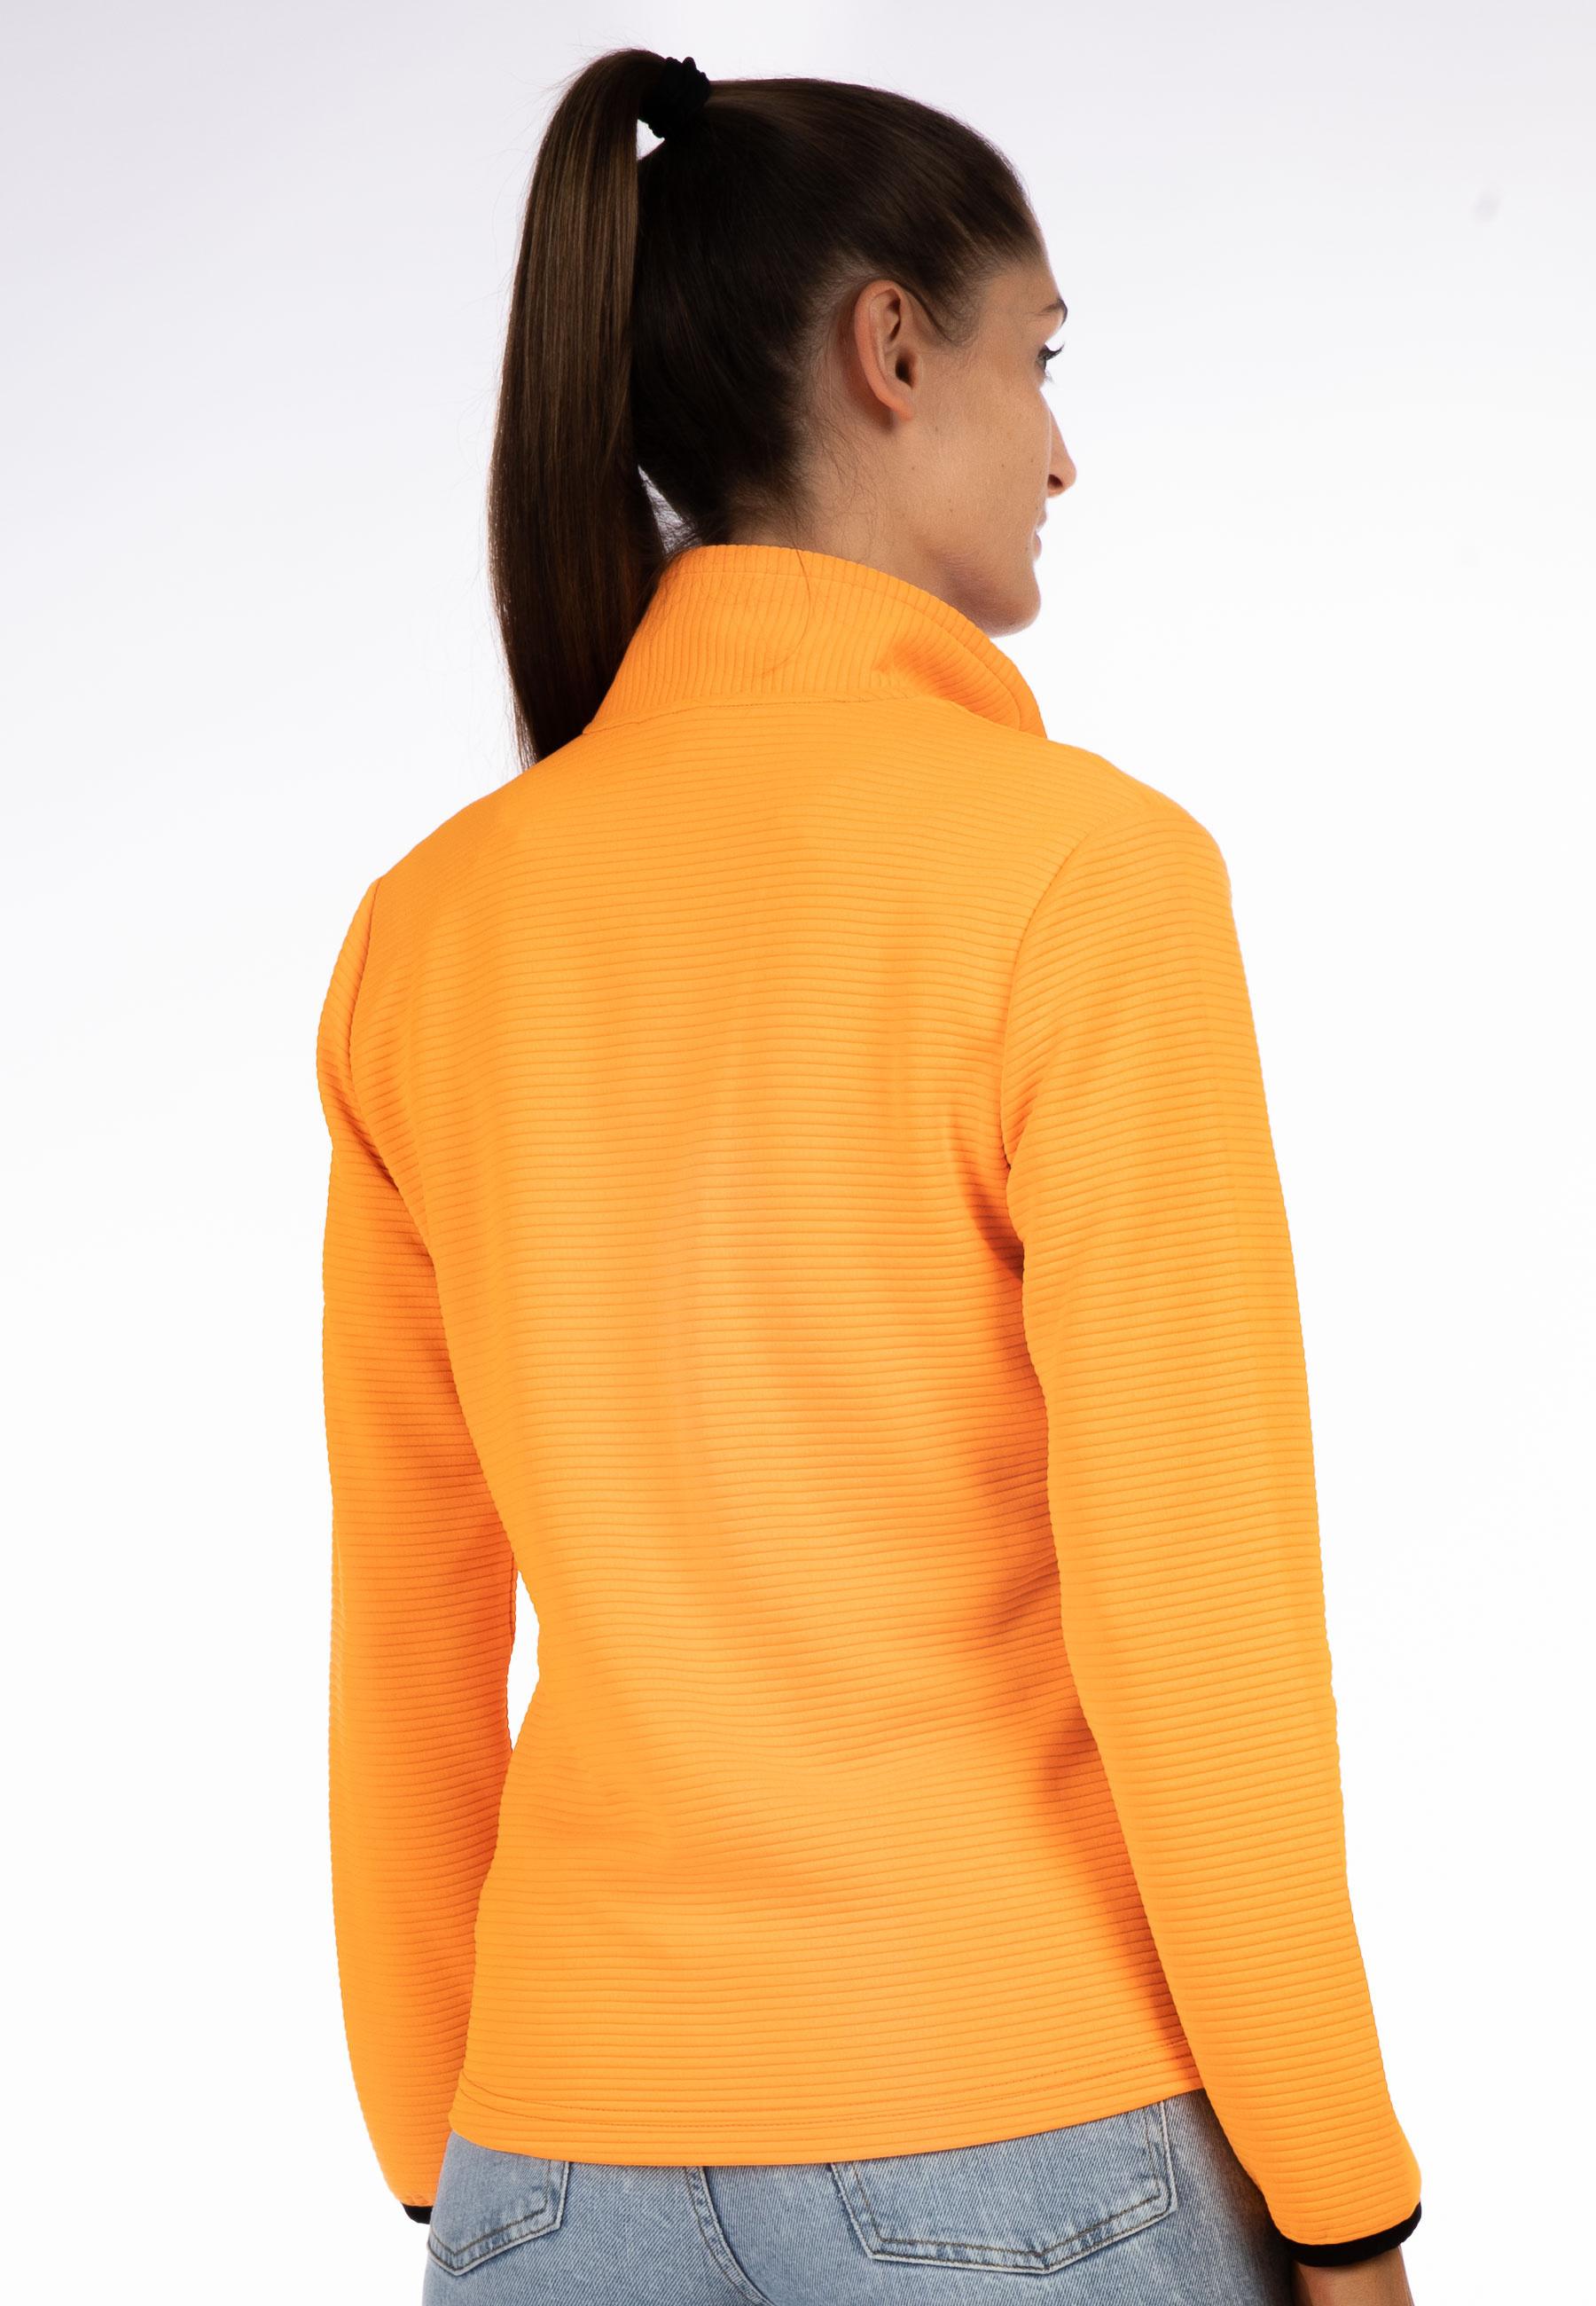 Shop von Online im Fleecejacke SportScheck kaufen orange LPO Damen